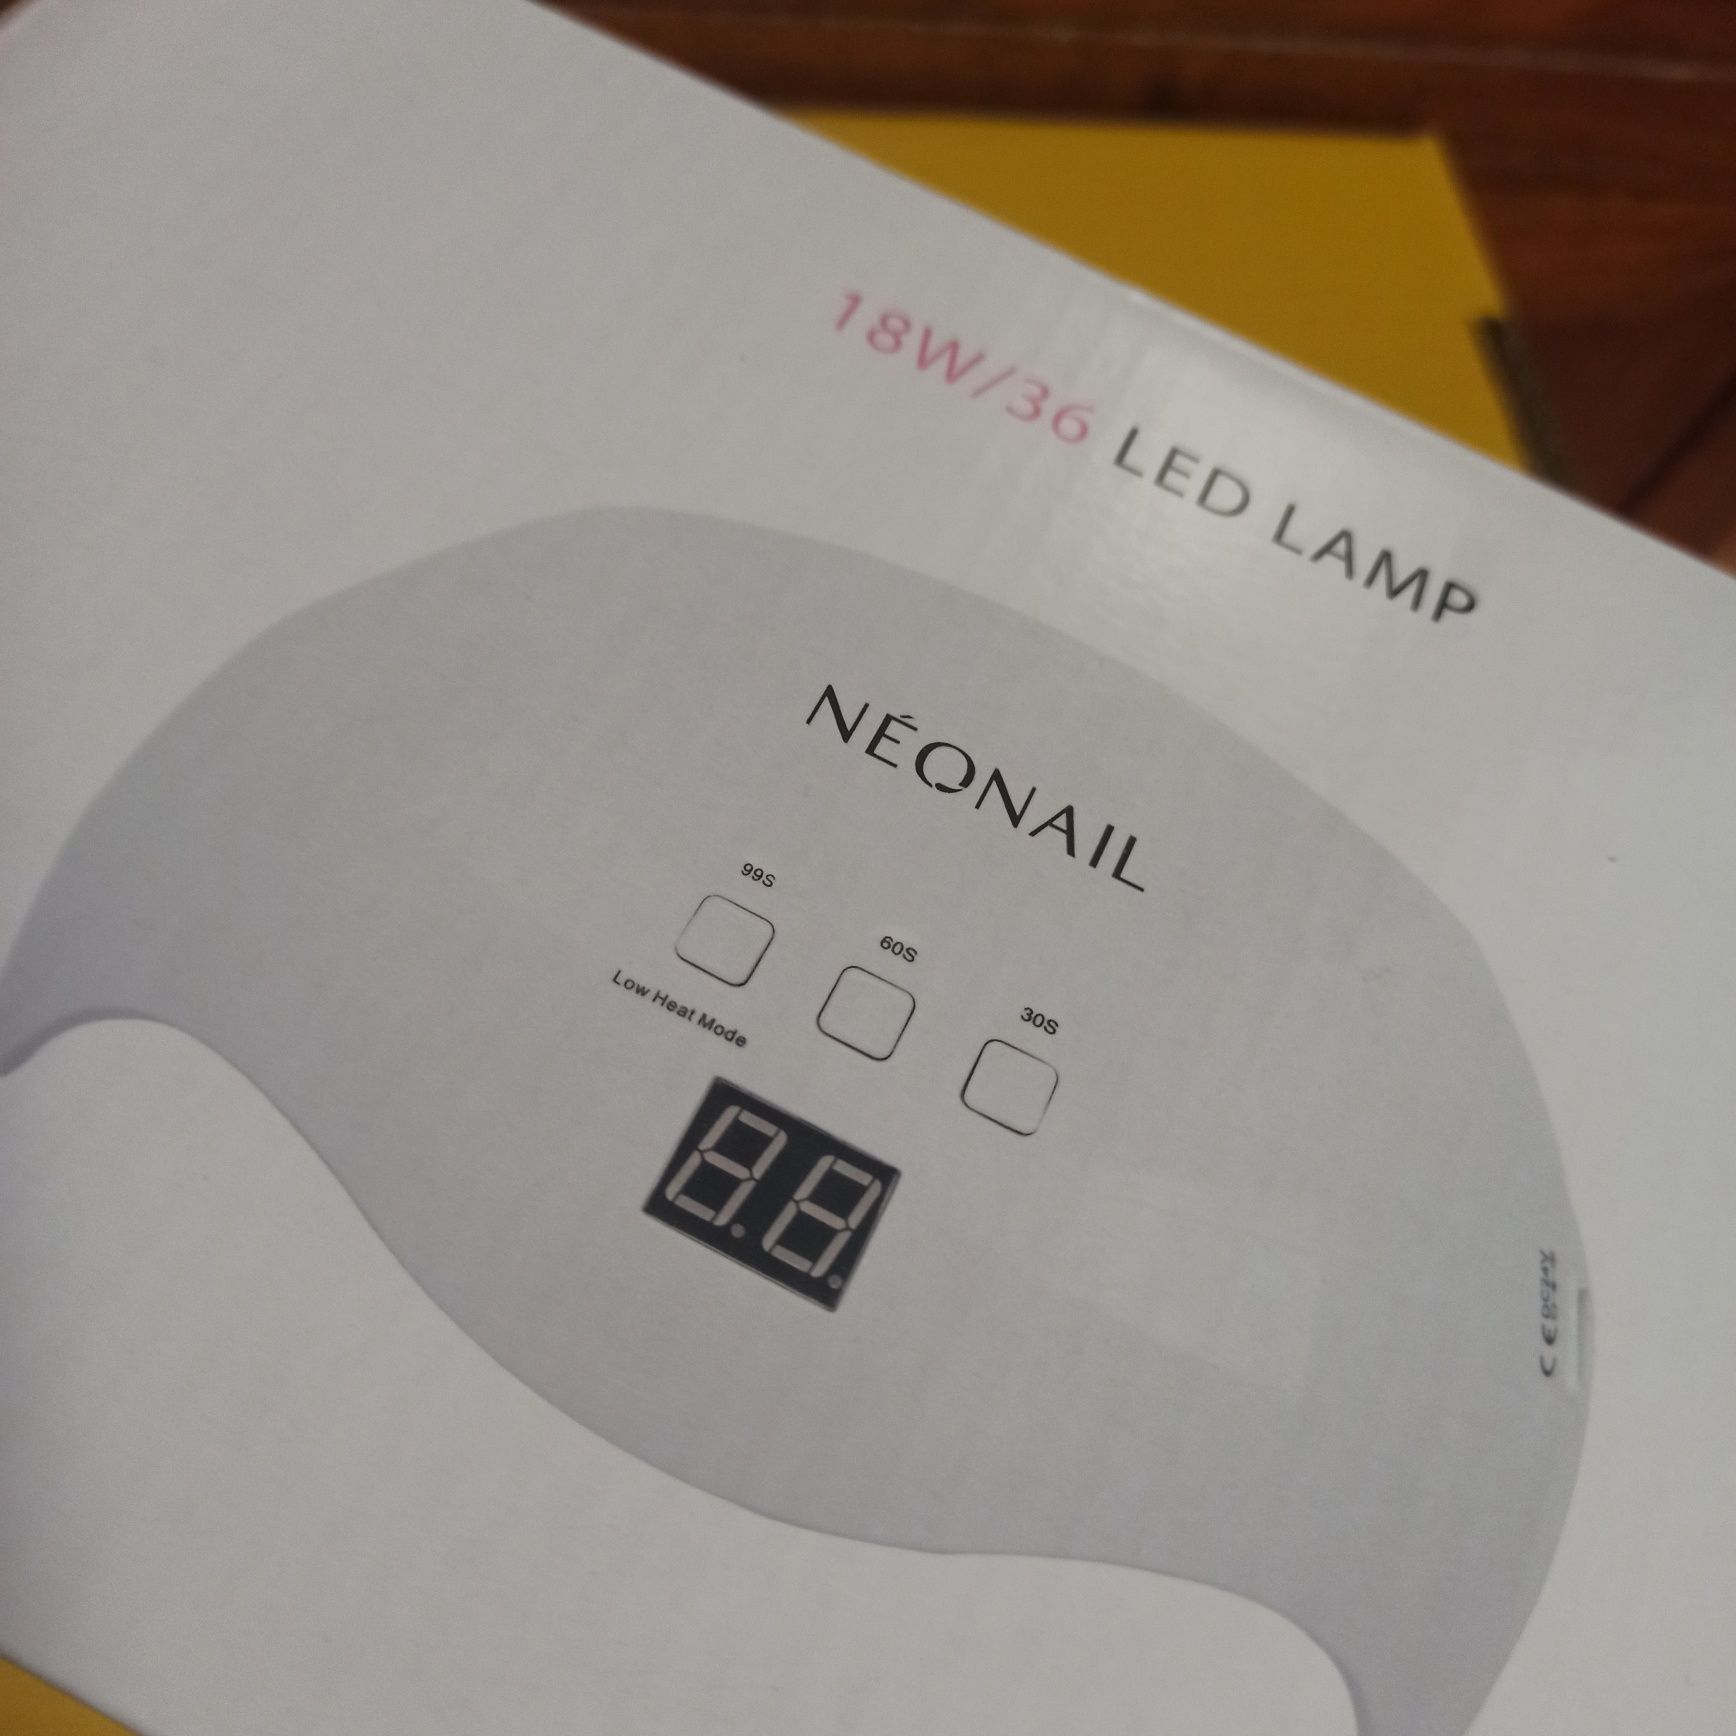 Nowa lampa led 18W/36 Neonail